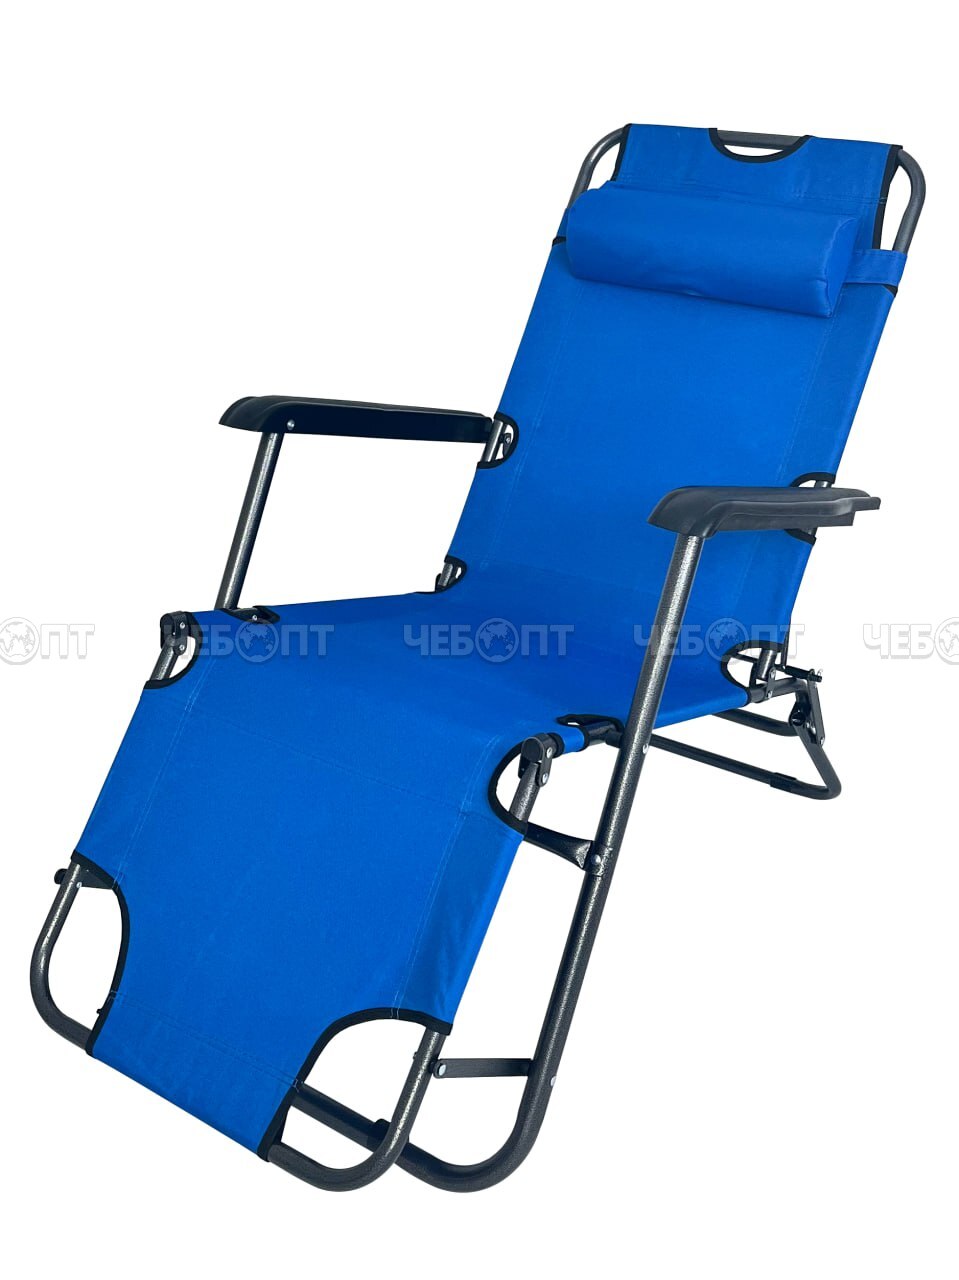 Кресло - шезлонг складное для дачи 1530*590 мм с подголовником, регулируемое, 8 положений (до положения лежа), до 100 кг арт. 290034 $ [4] GOODSEE. ЧЕБОПТ.